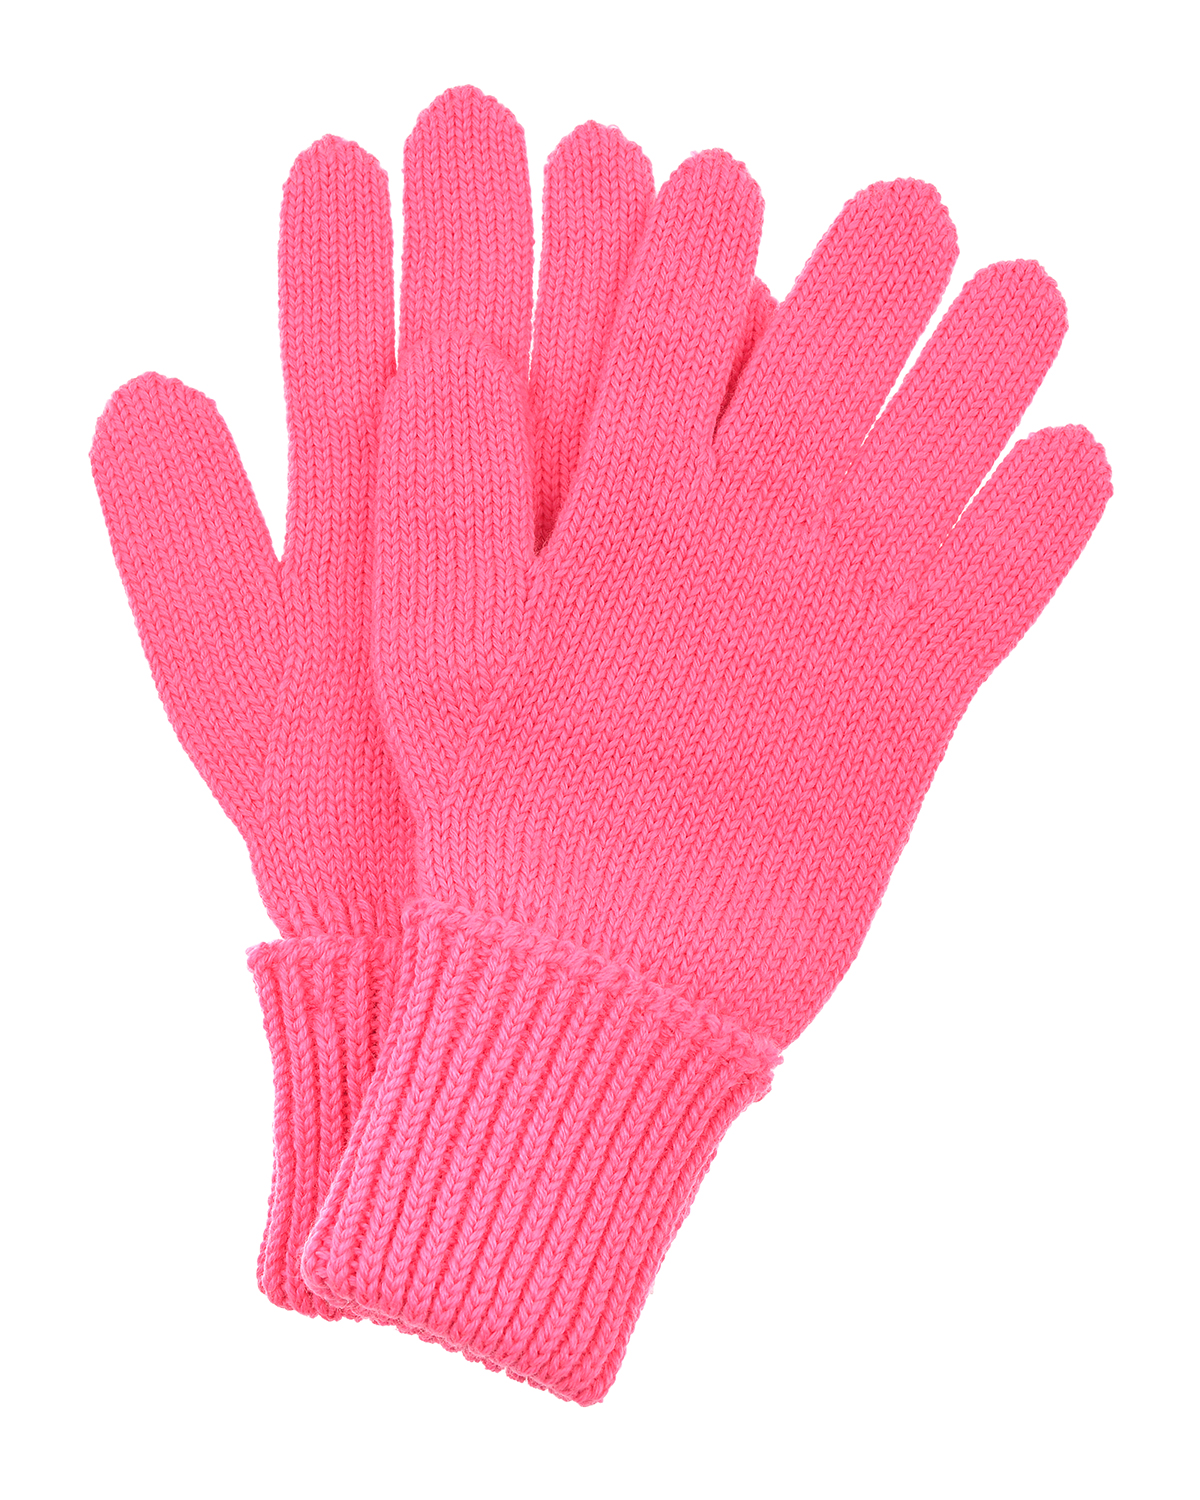 Шерстяные перчатки цвета фуксии Chobi детские, размер 4 - фото 1